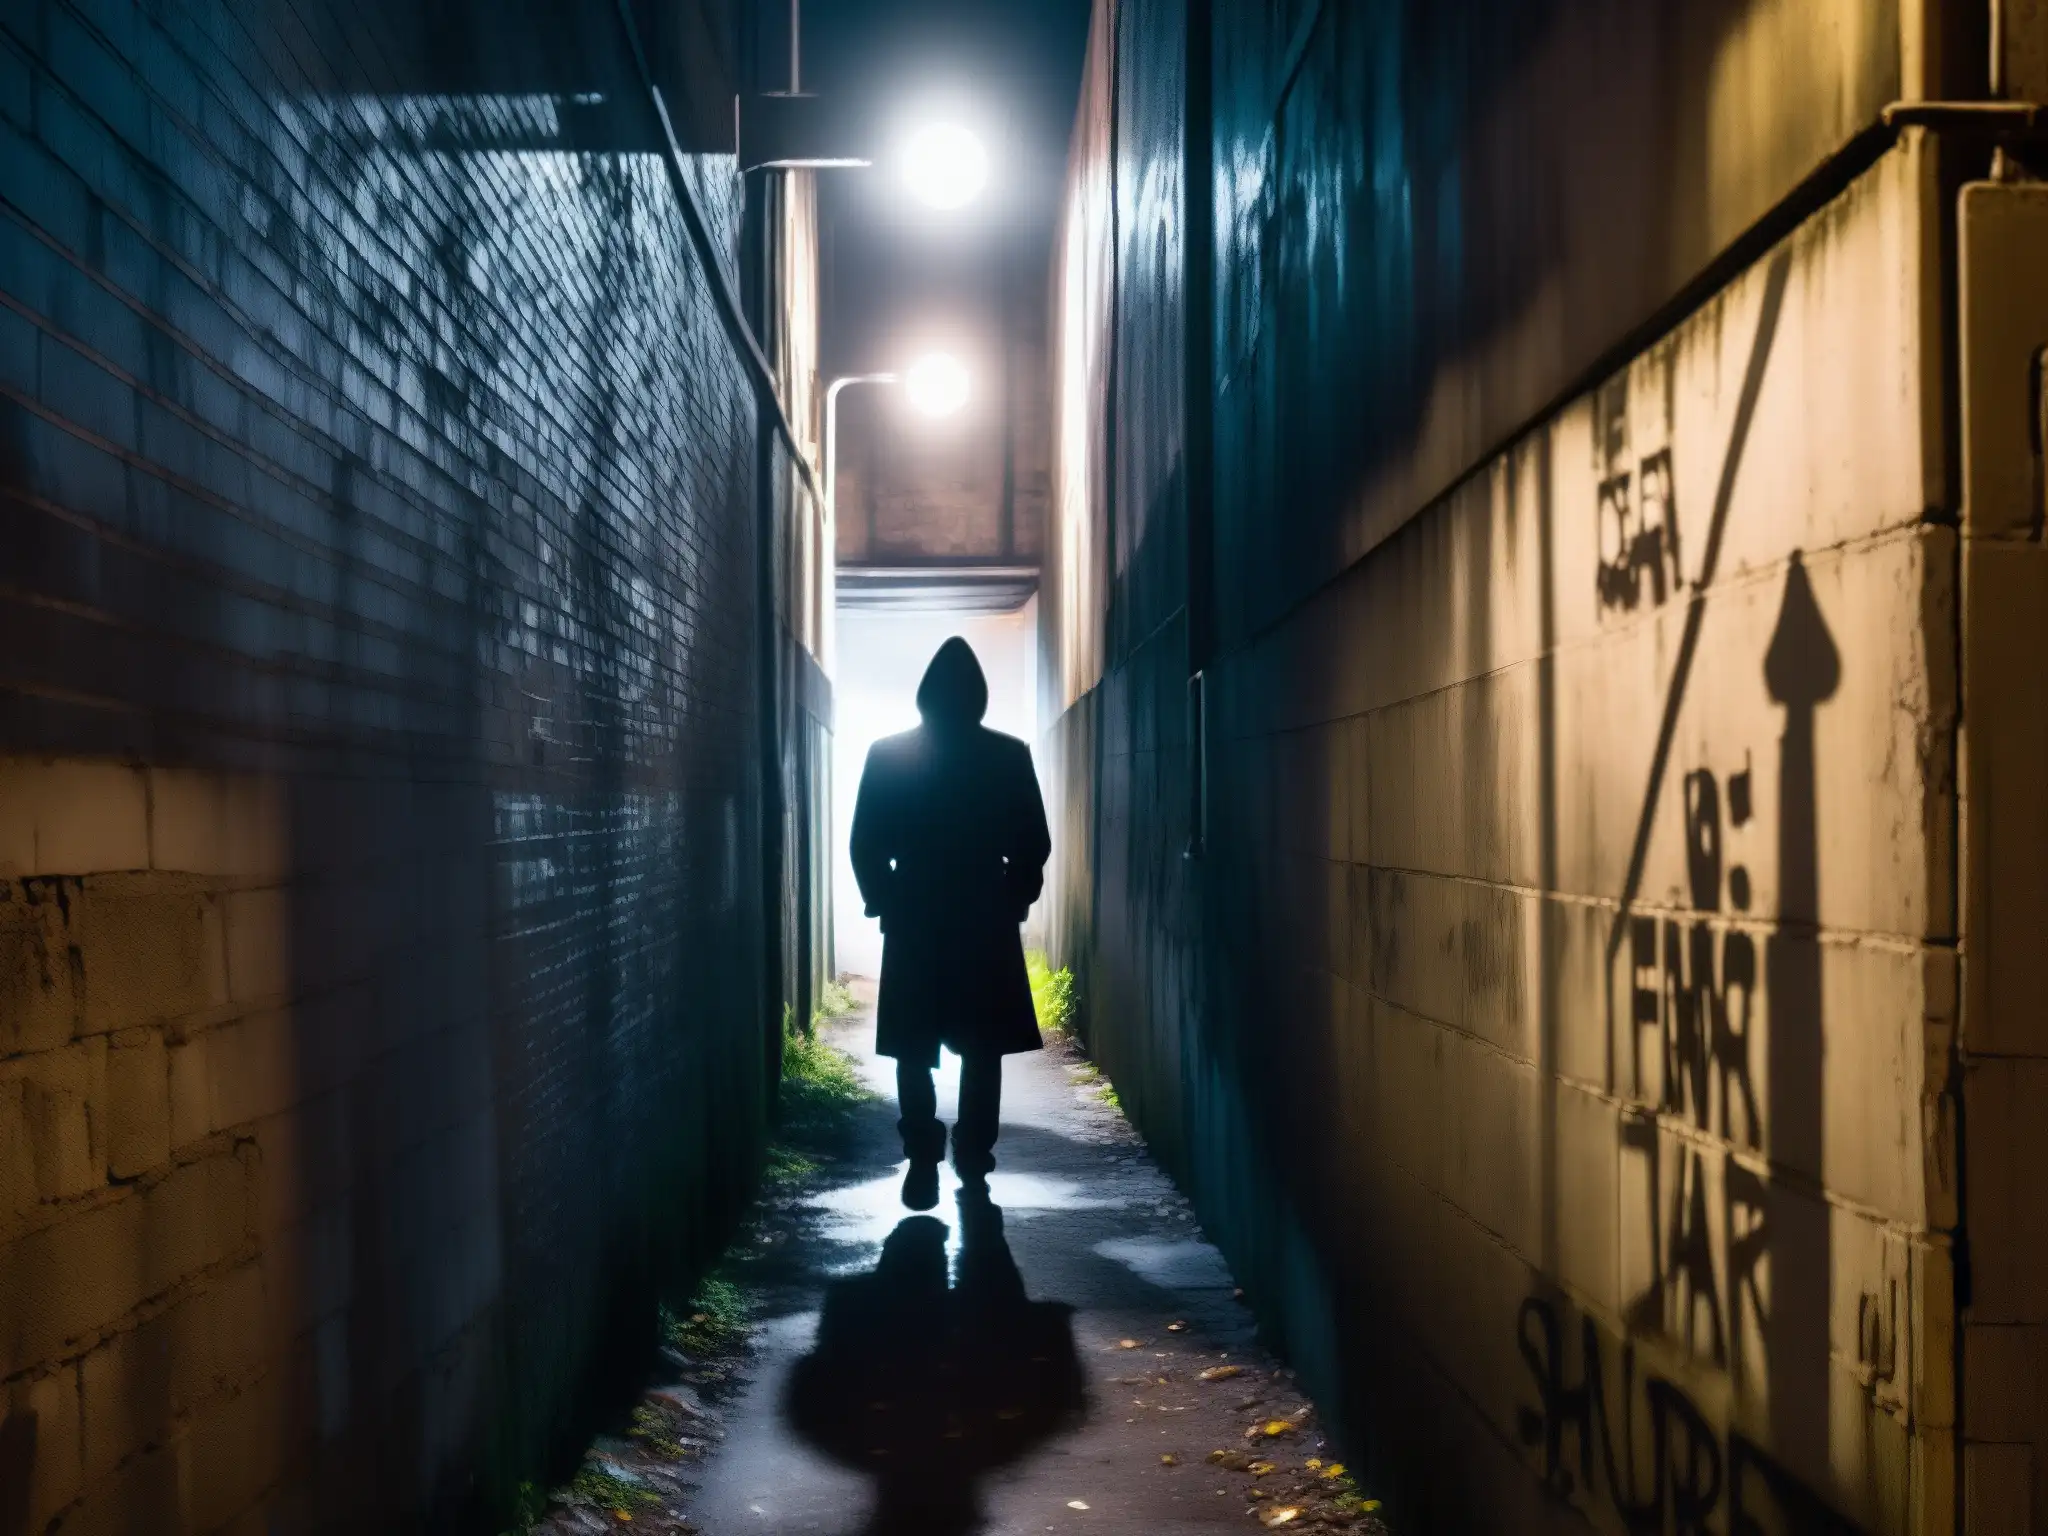 Una imagen inquietante de un callejón abandonado, con grafitis y una única farola parpadeante que proyecta sombras inquietantes